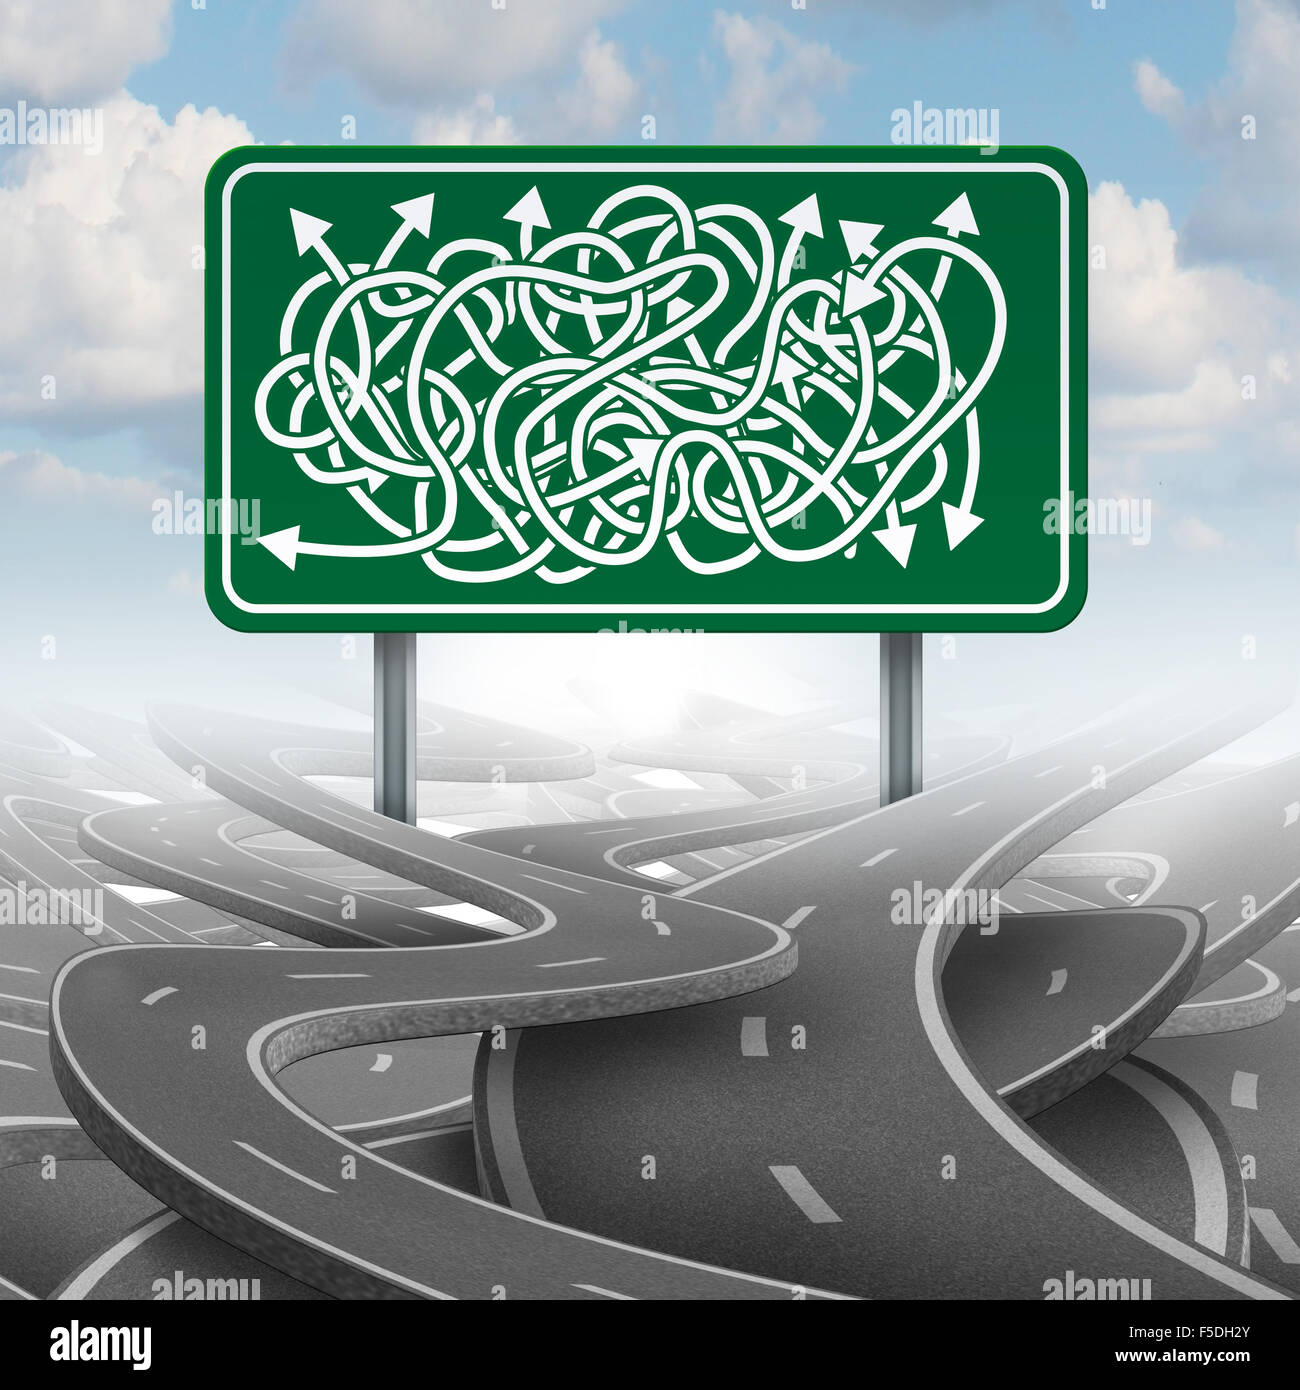 Concepto de negocio elección confusa y la burocracia como símbolo de un grupo de carreteras enredado con un signo de la autopista green mezclados con las flechas de dirección. Foto de stock